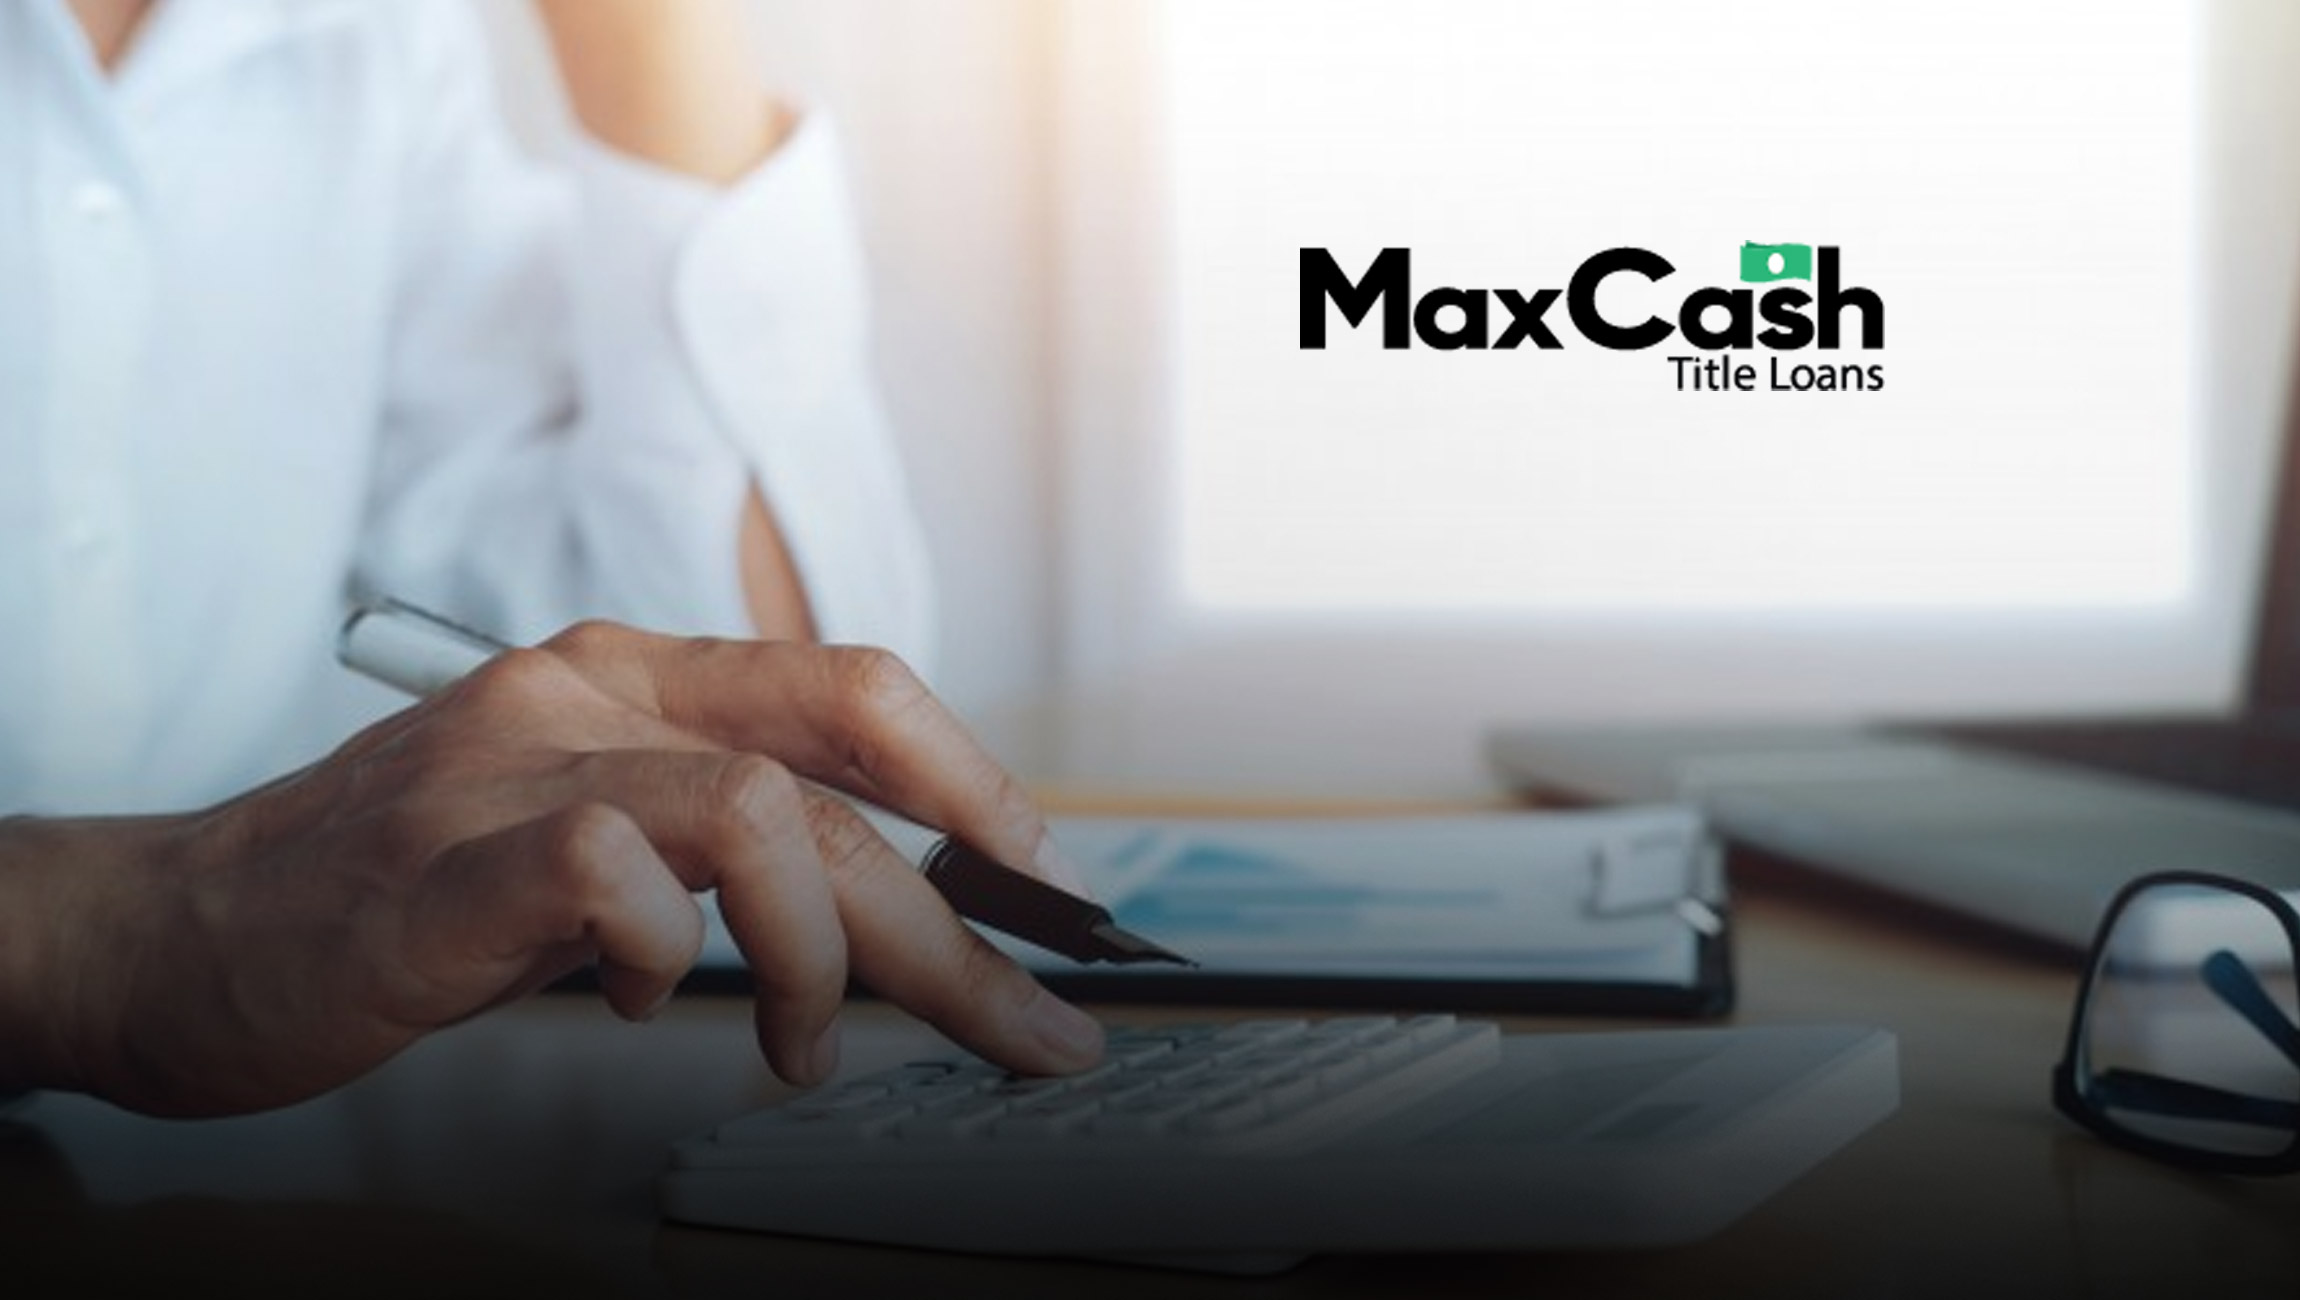 is max cash title loans legit